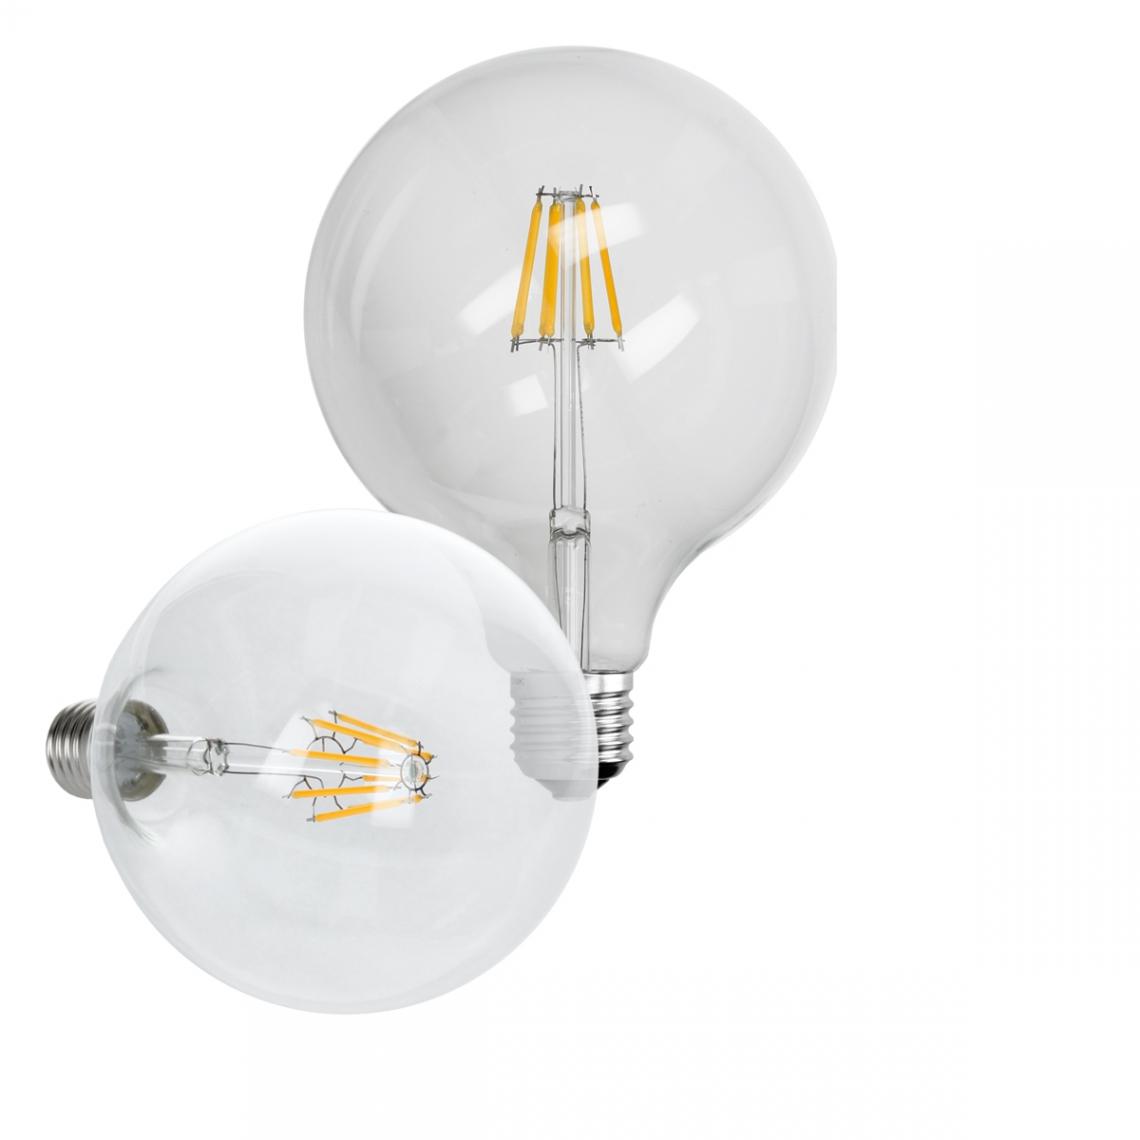 Ecd Germany - ECD Germany 4 x LED Filament de l'ampoule E27 Edison 8W 125 mm 816 Lumen 120 ° Angle de courant alternatif 220-240 V reste caché et remplace 45W Lampe de globe incandescence Blanc Chaud - Ampoules LED